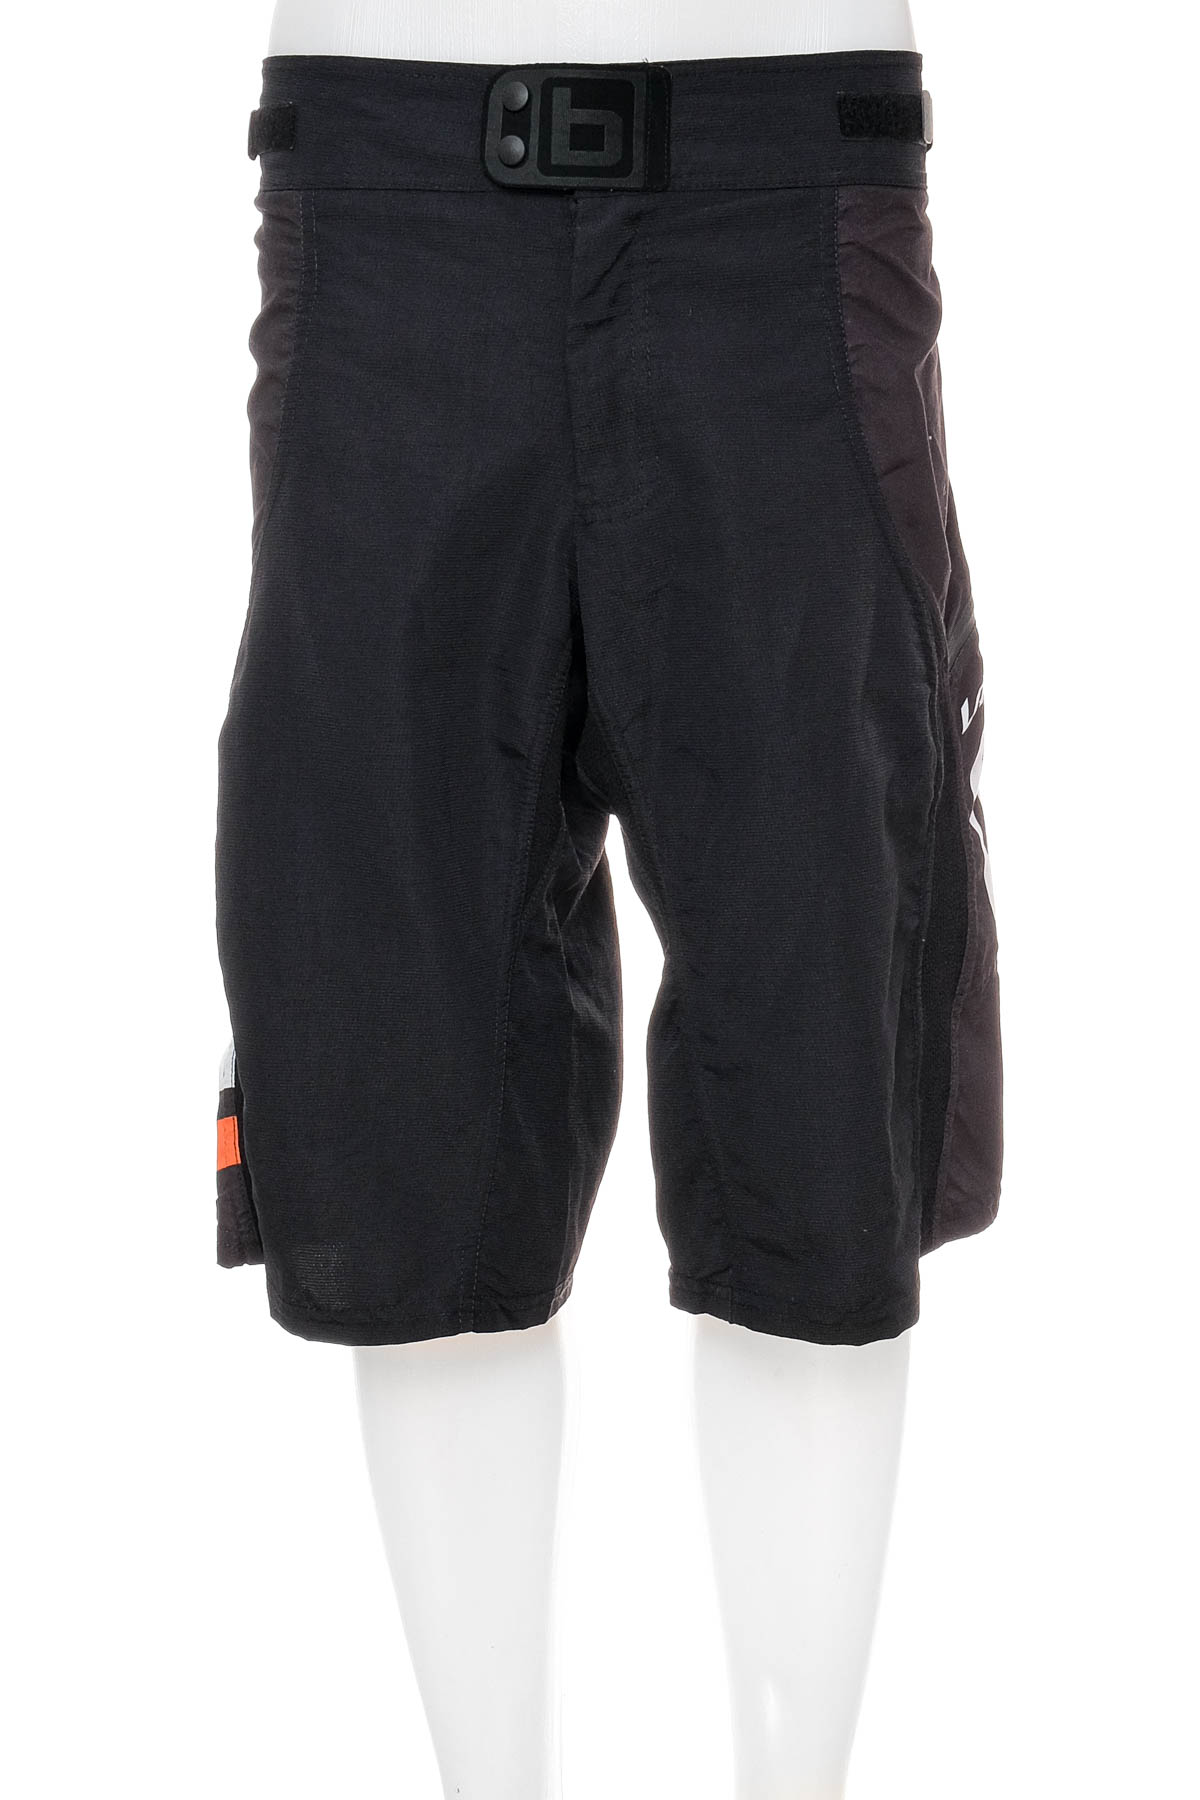 Men's shorts - LAPIERRE - 0